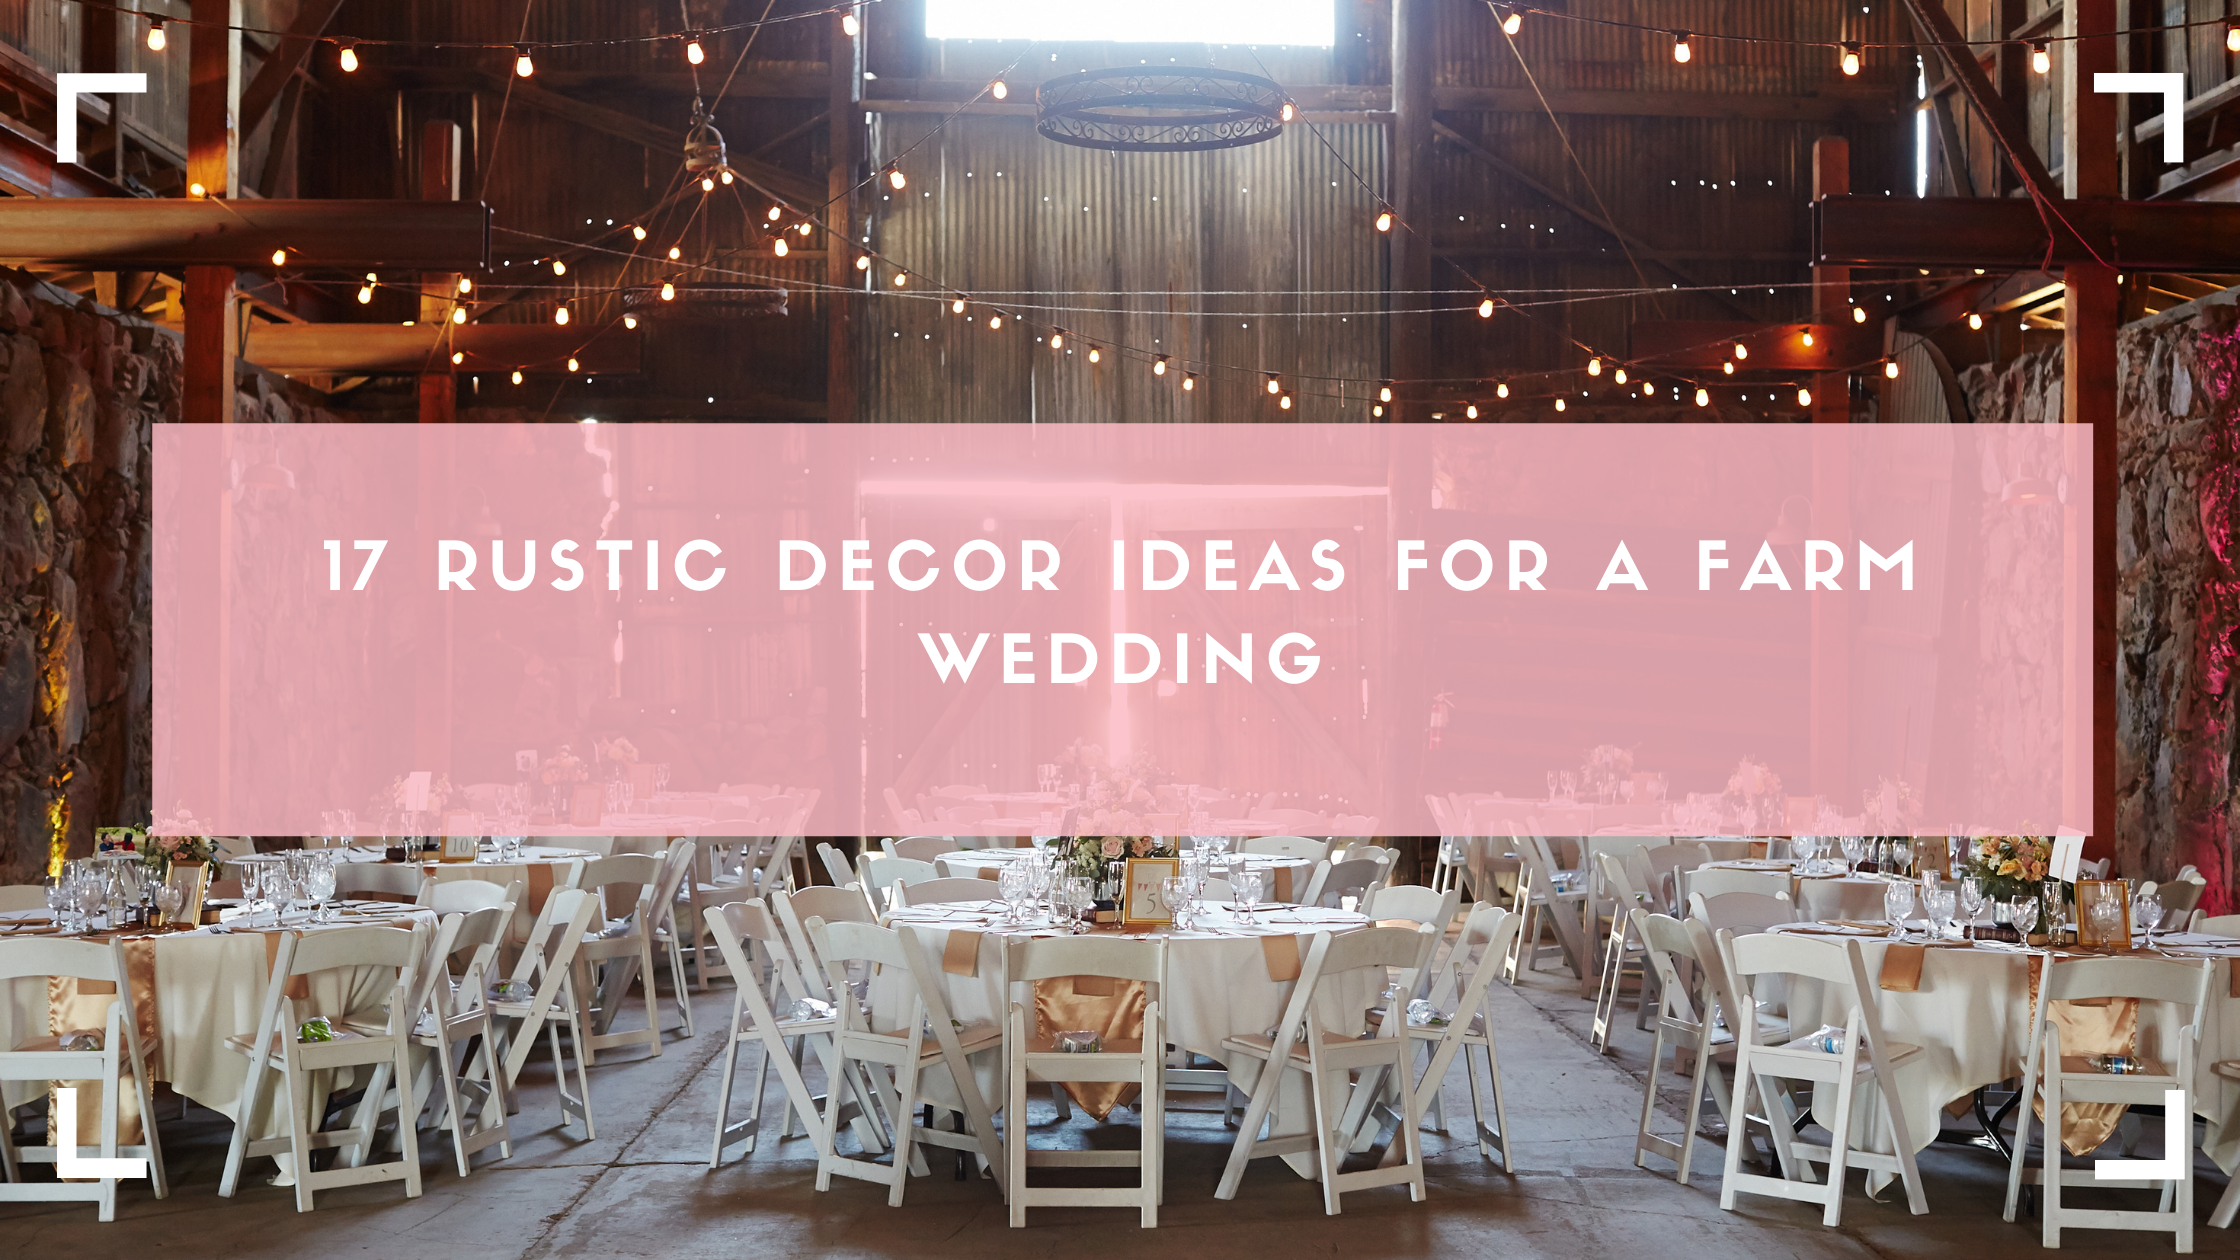 17 Rustic Decor Ideas for a Farm Wedding - The Wedding Planner